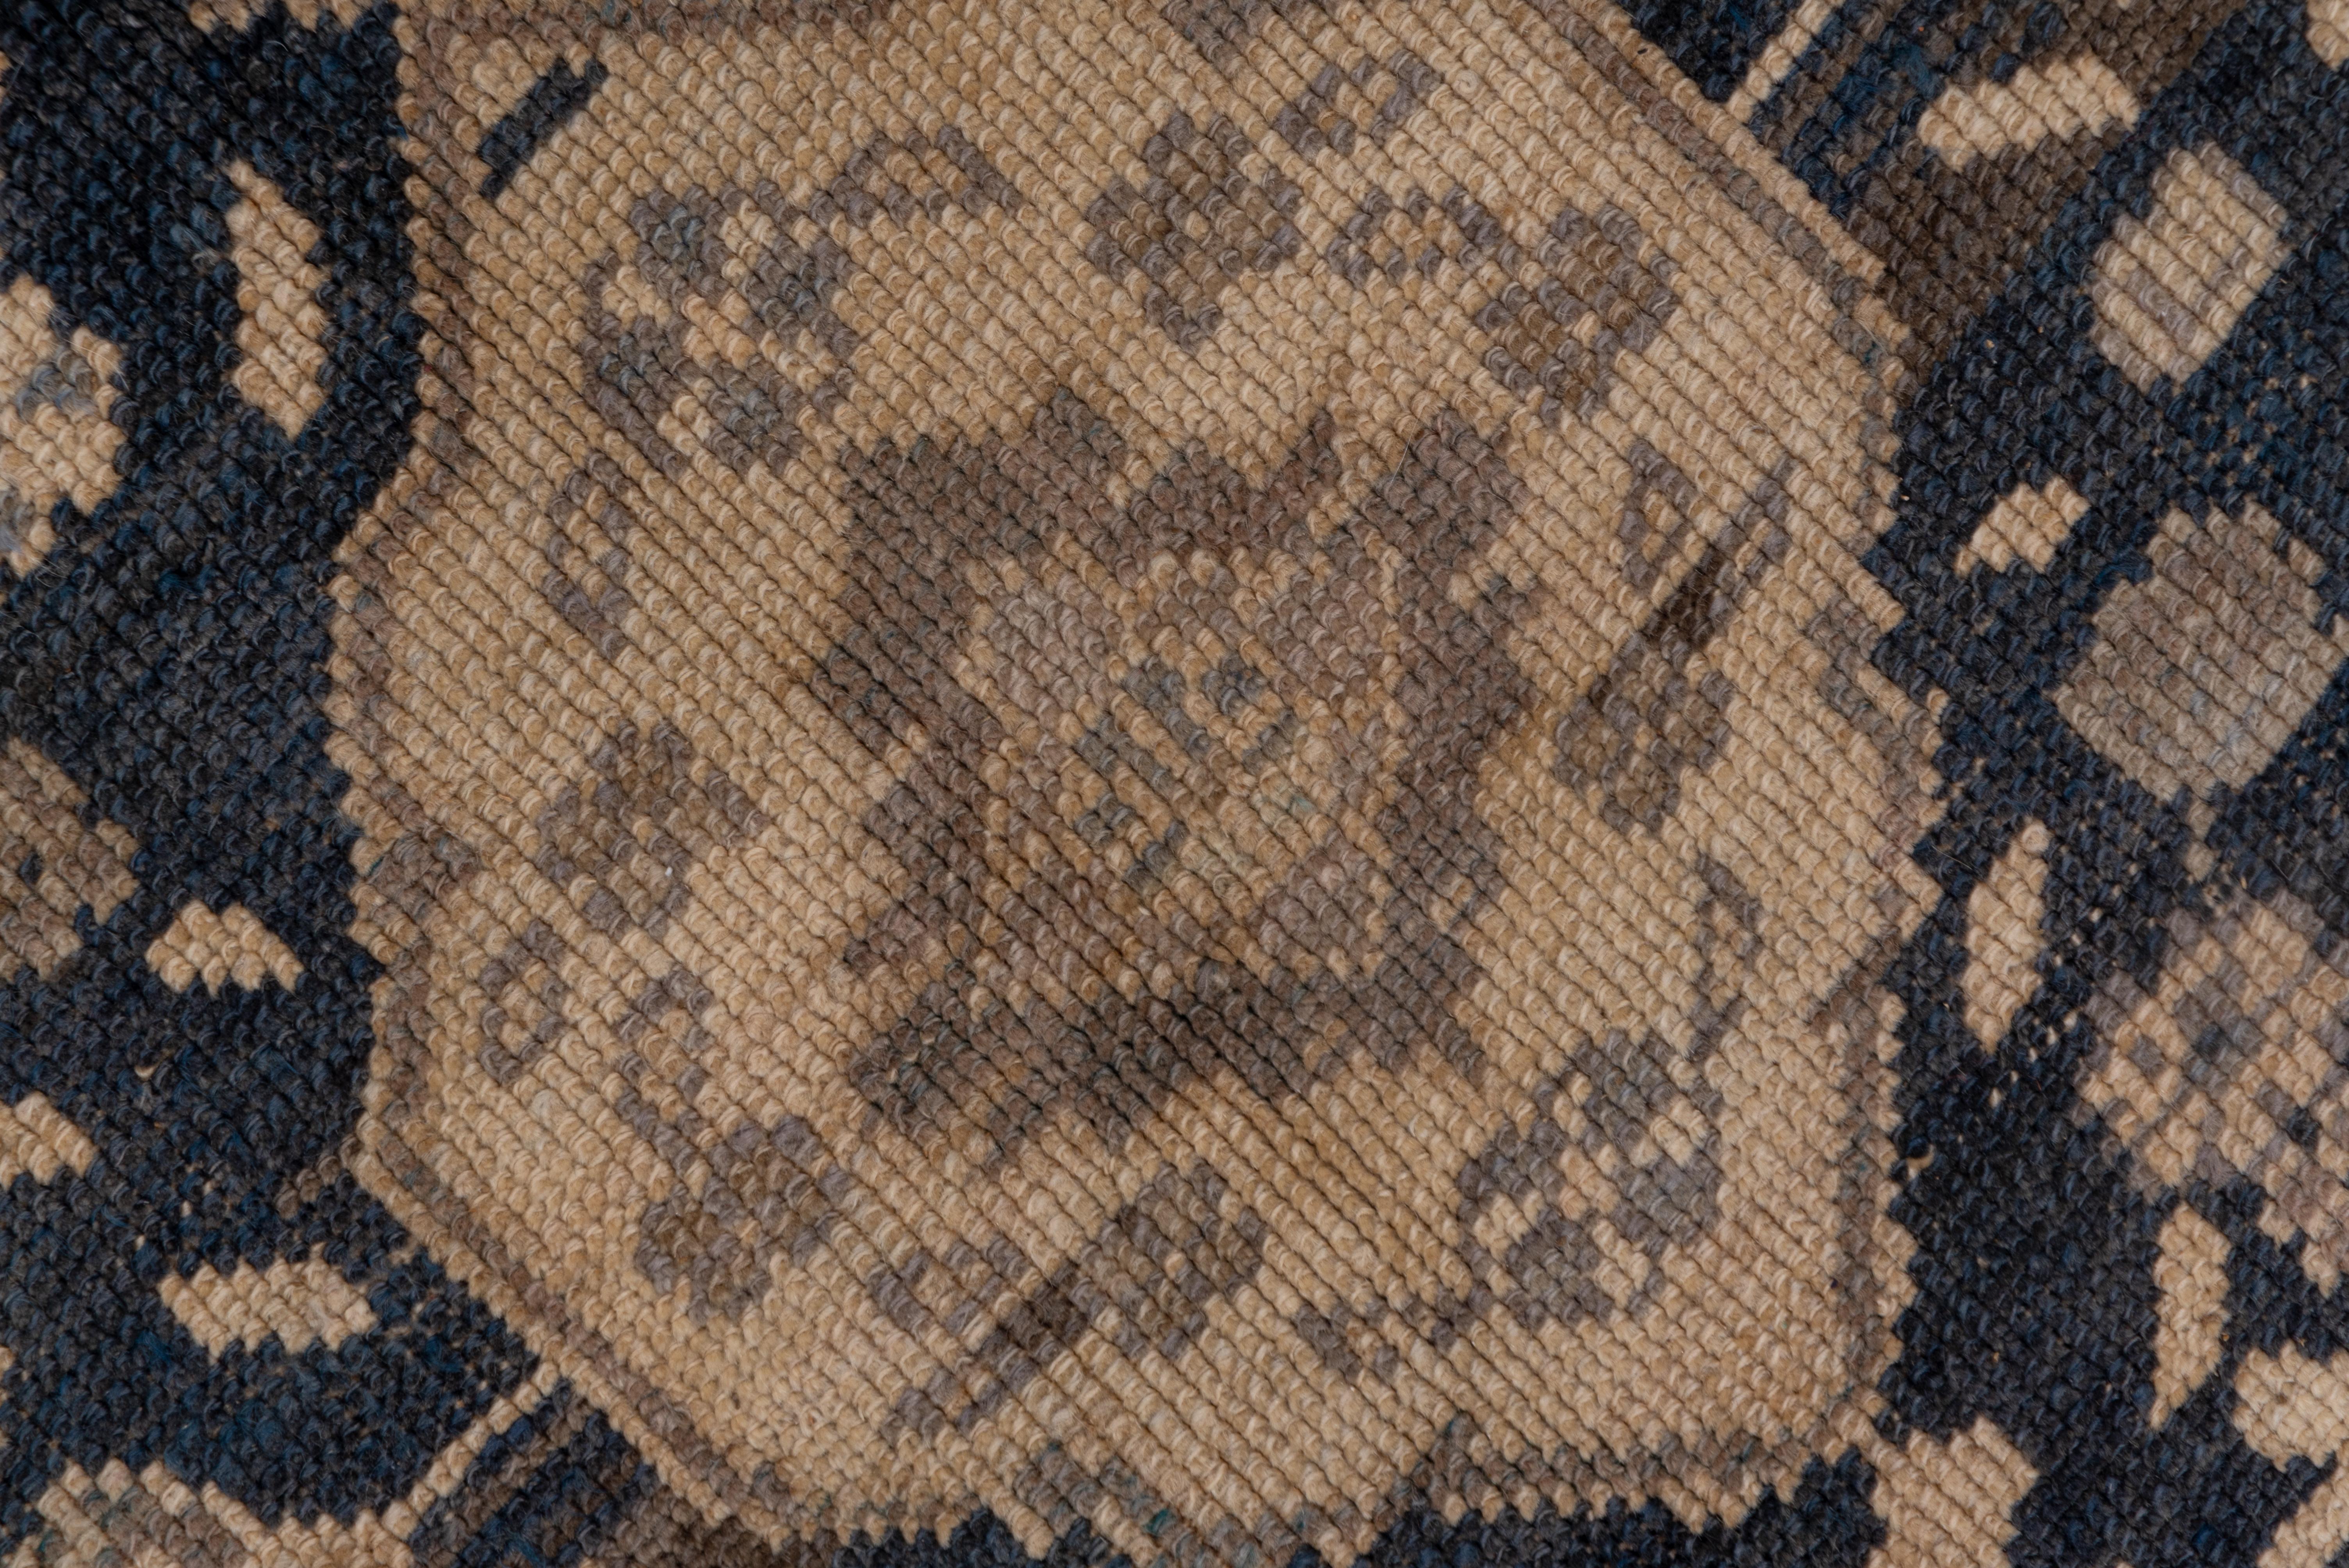 Le champ oatmeal de ce tapis est décoré de cinq médaillons lobés en ardoise, avec des centres hexagonaux en sable et des remplissages de fleurs. La bordure en ardoise présente des octogrammes, des palmettes de bouclier, des feuilles stylisées et de